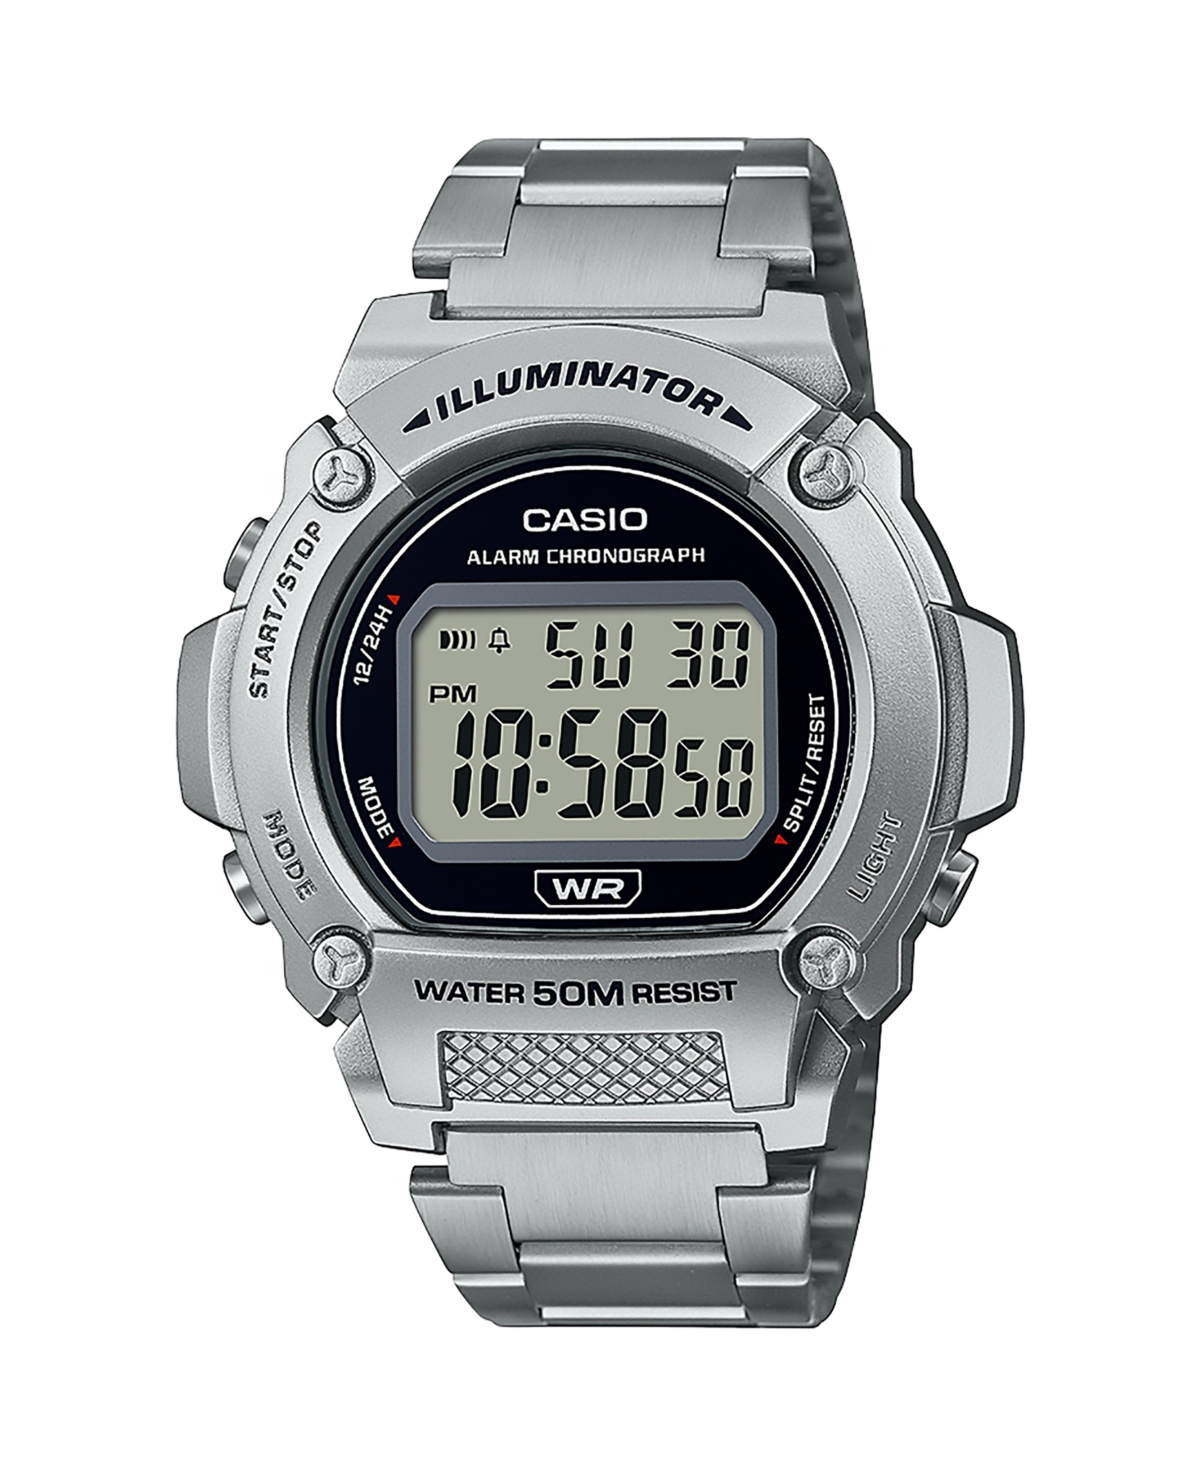 Casio Men's Digital Silver-tone Stainless Steel Watch 47mm, W219hd-1av